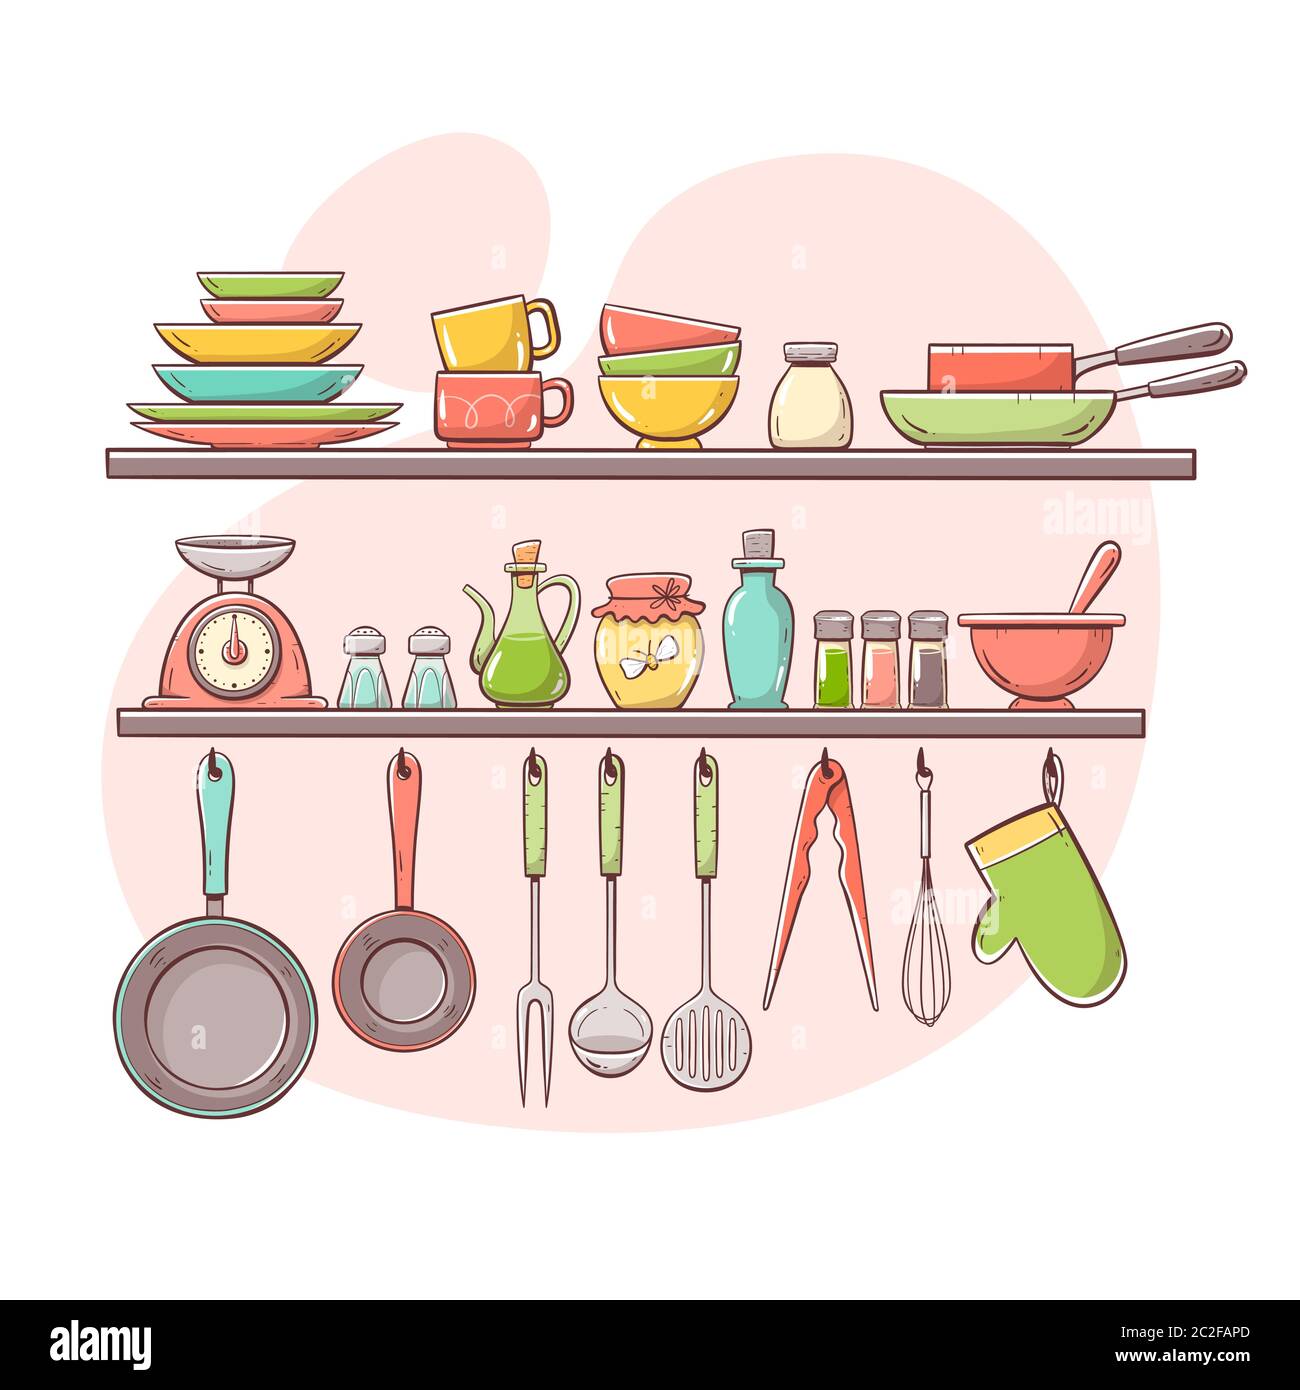 cuencos y otros utensilios de cocina Stock Photo